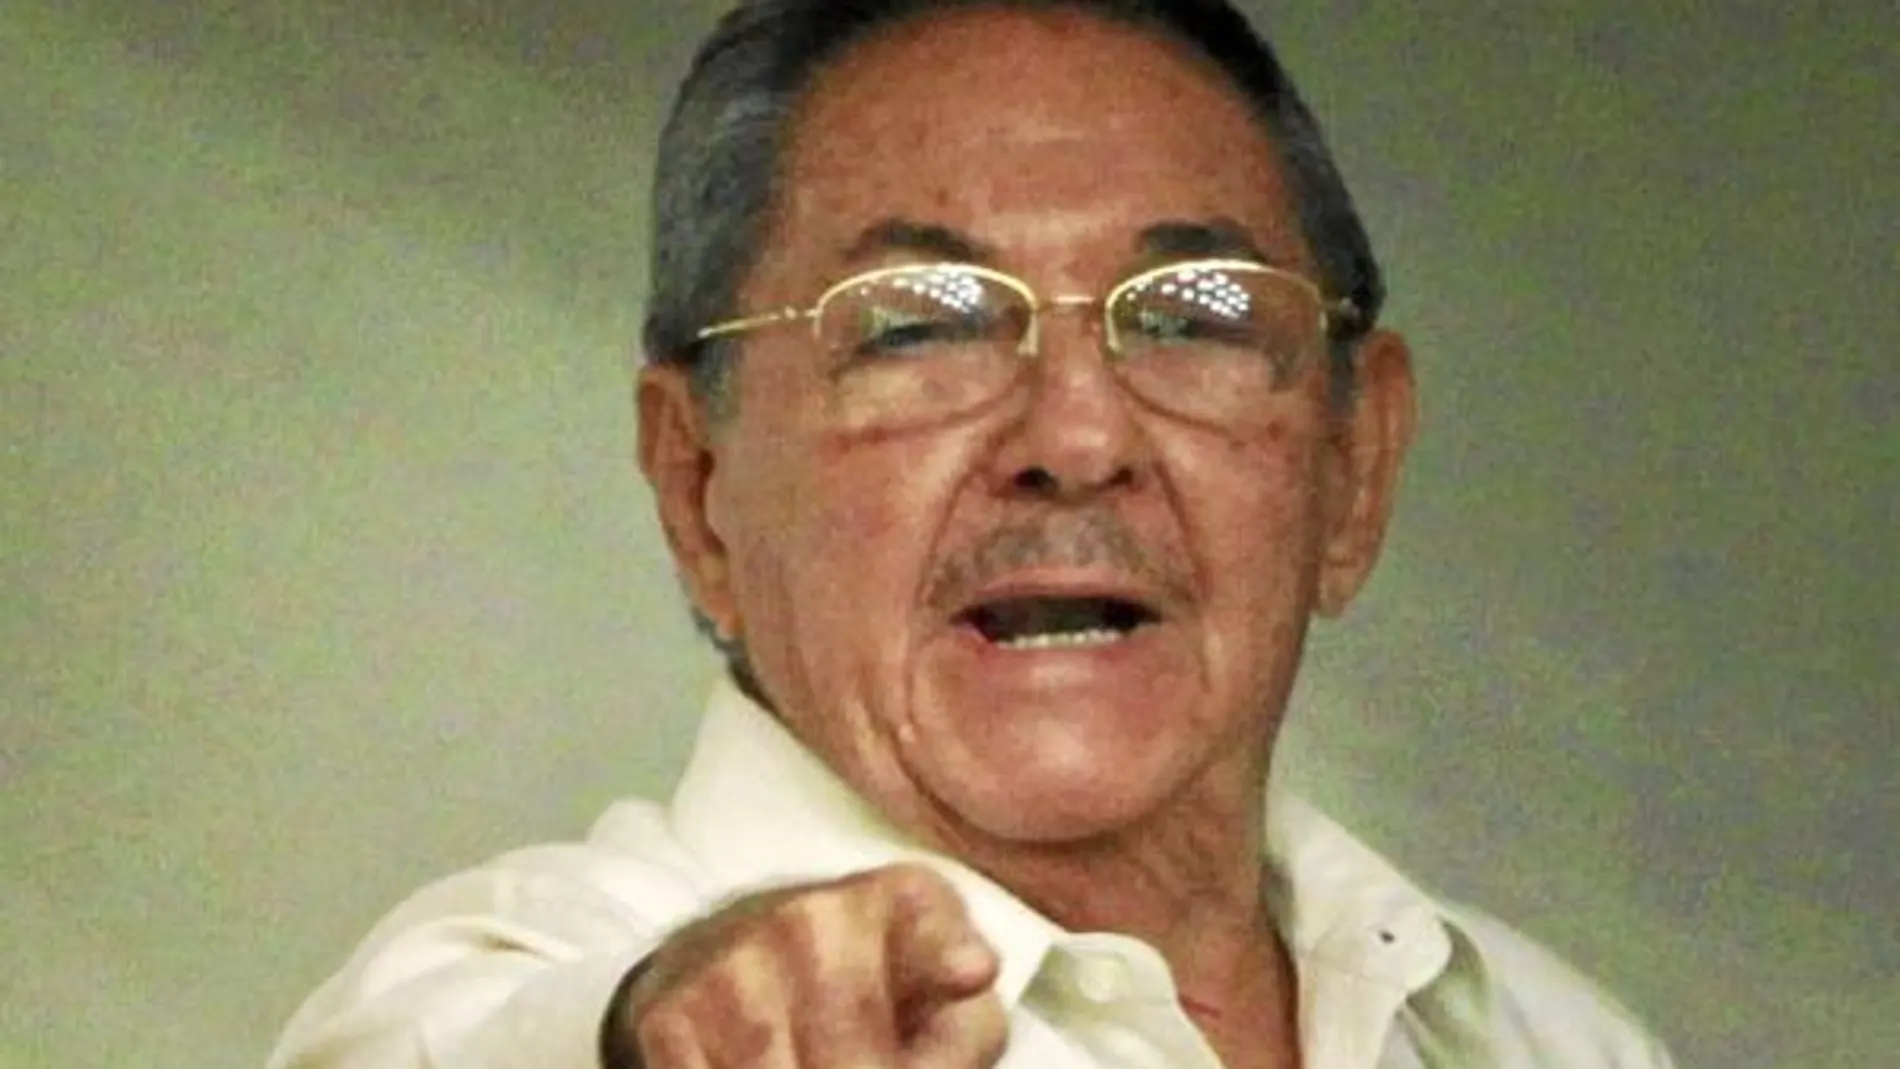 ANÁLISIS: Las buenas intenciones del régimen de los Castro